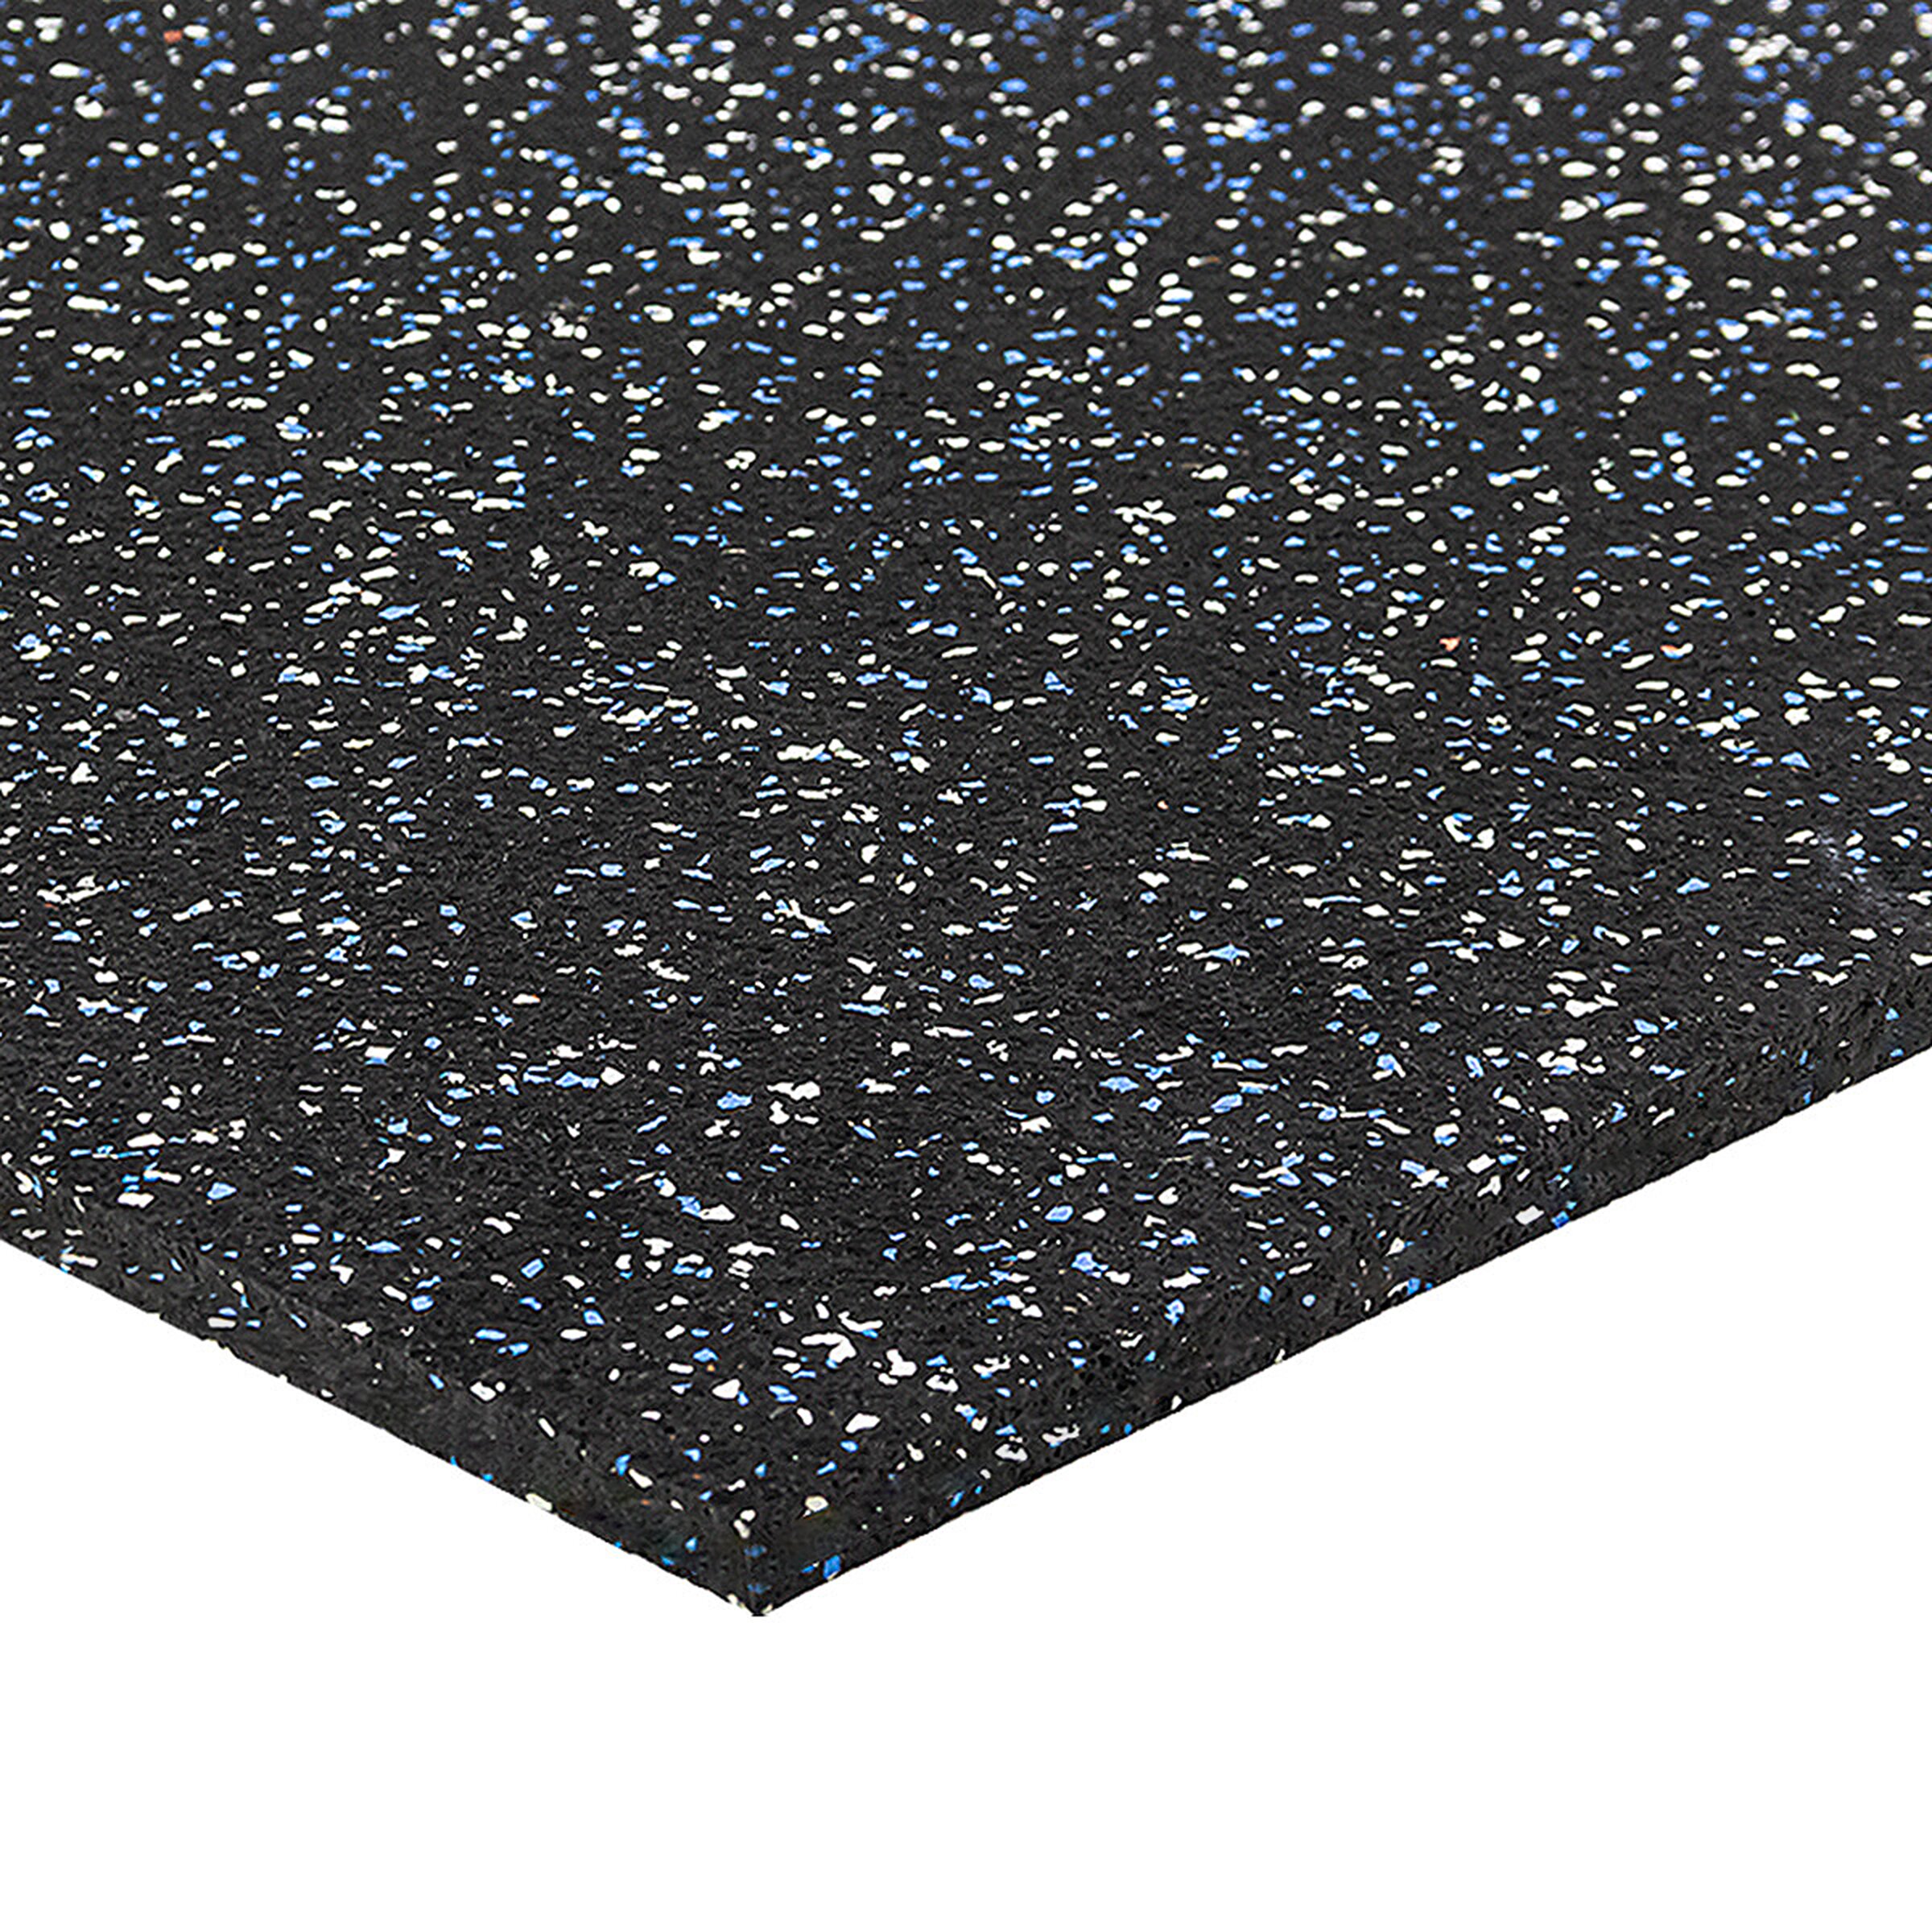 Čierno-bielo-modrá gumová modulová puzzle dlažba (stred) FLOMA FitFlo SF1050 - dĺžka 100 cm, šírka 100 cm, výška 1 cm